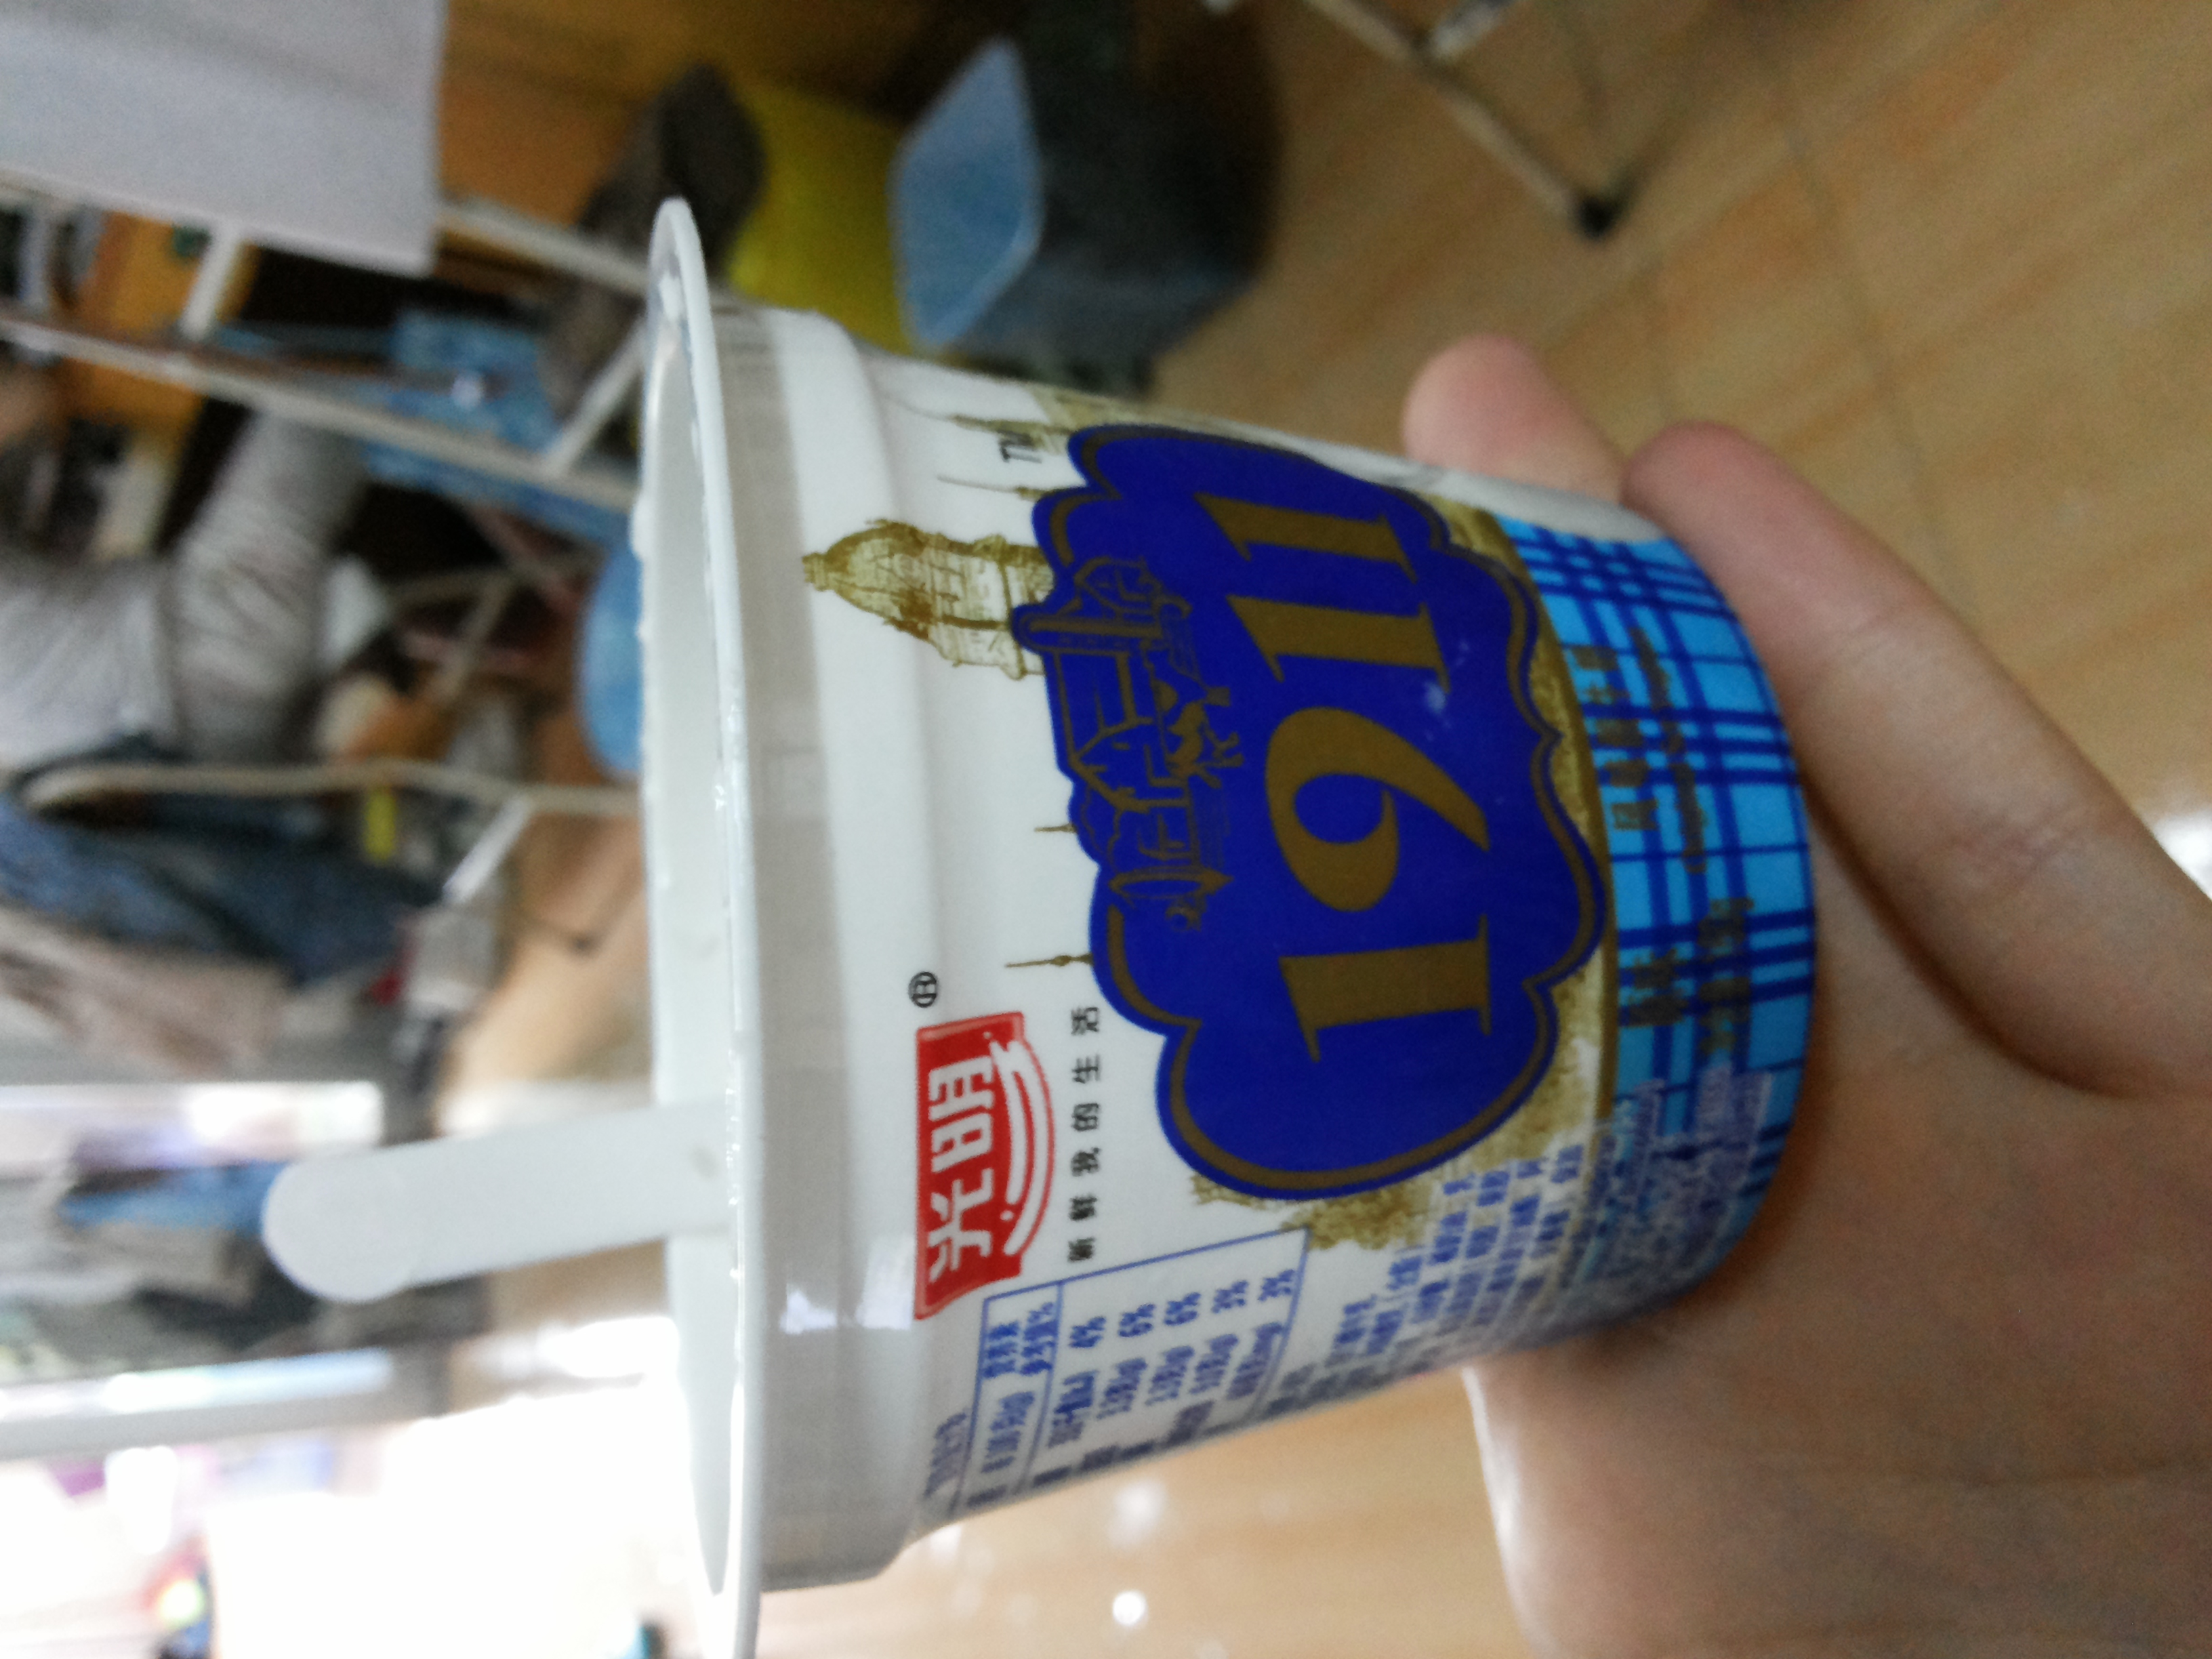 小雯是个喜欢吃酸奶的孩子  记得小时候买那种瓷罐罐里面的酸奶喝